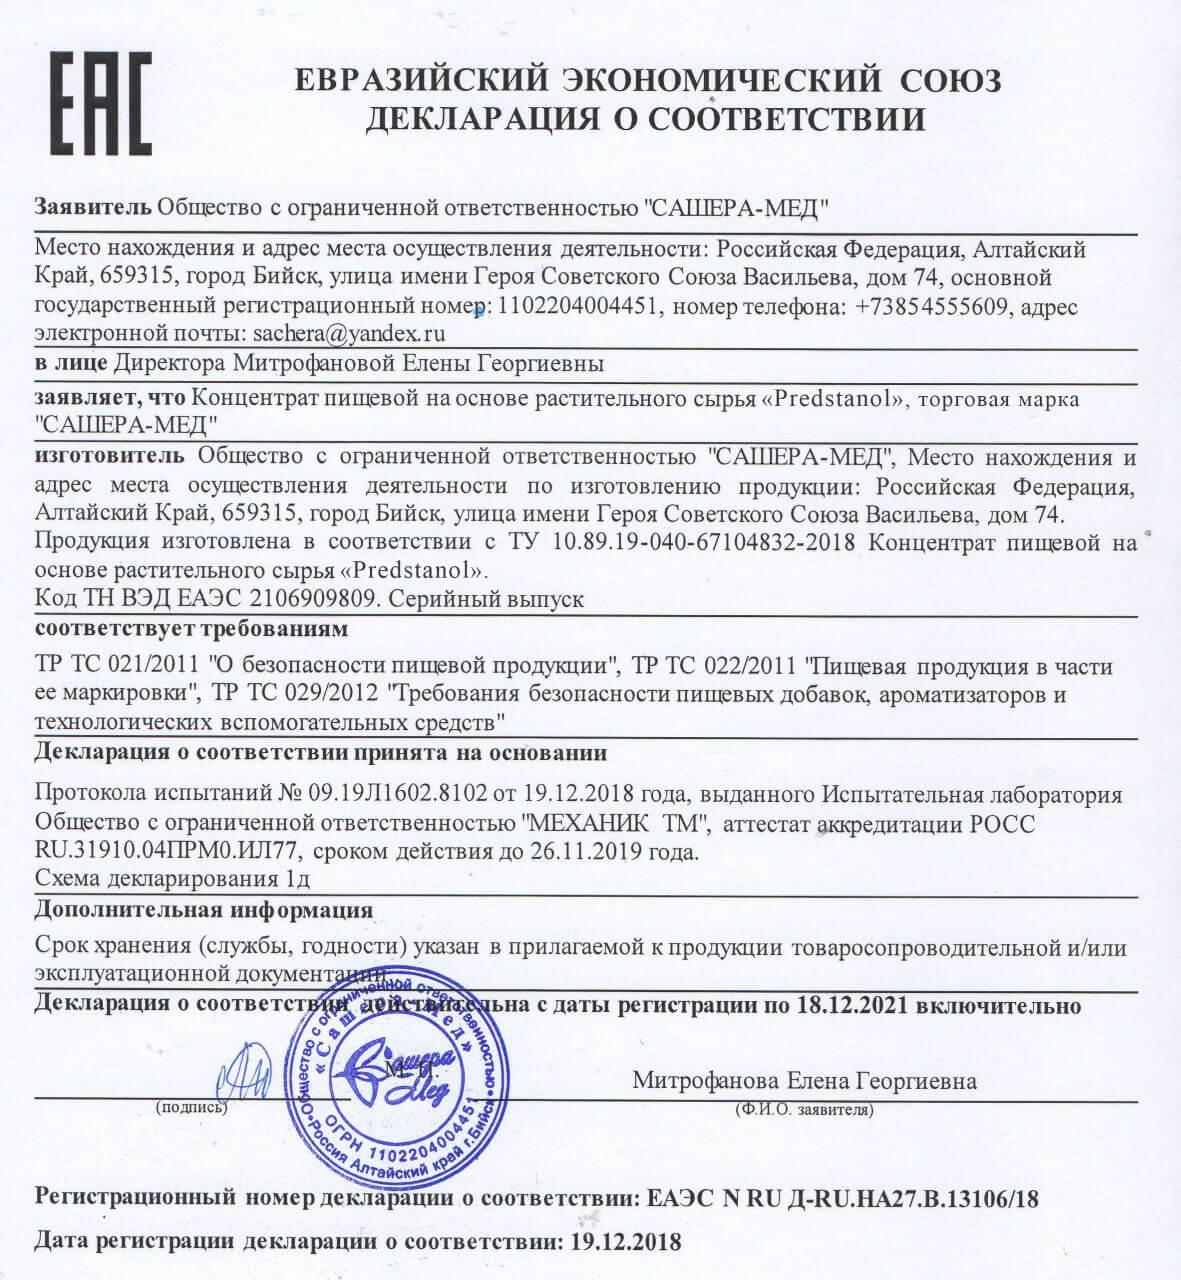 Сертификат на предстанол в Ижевске